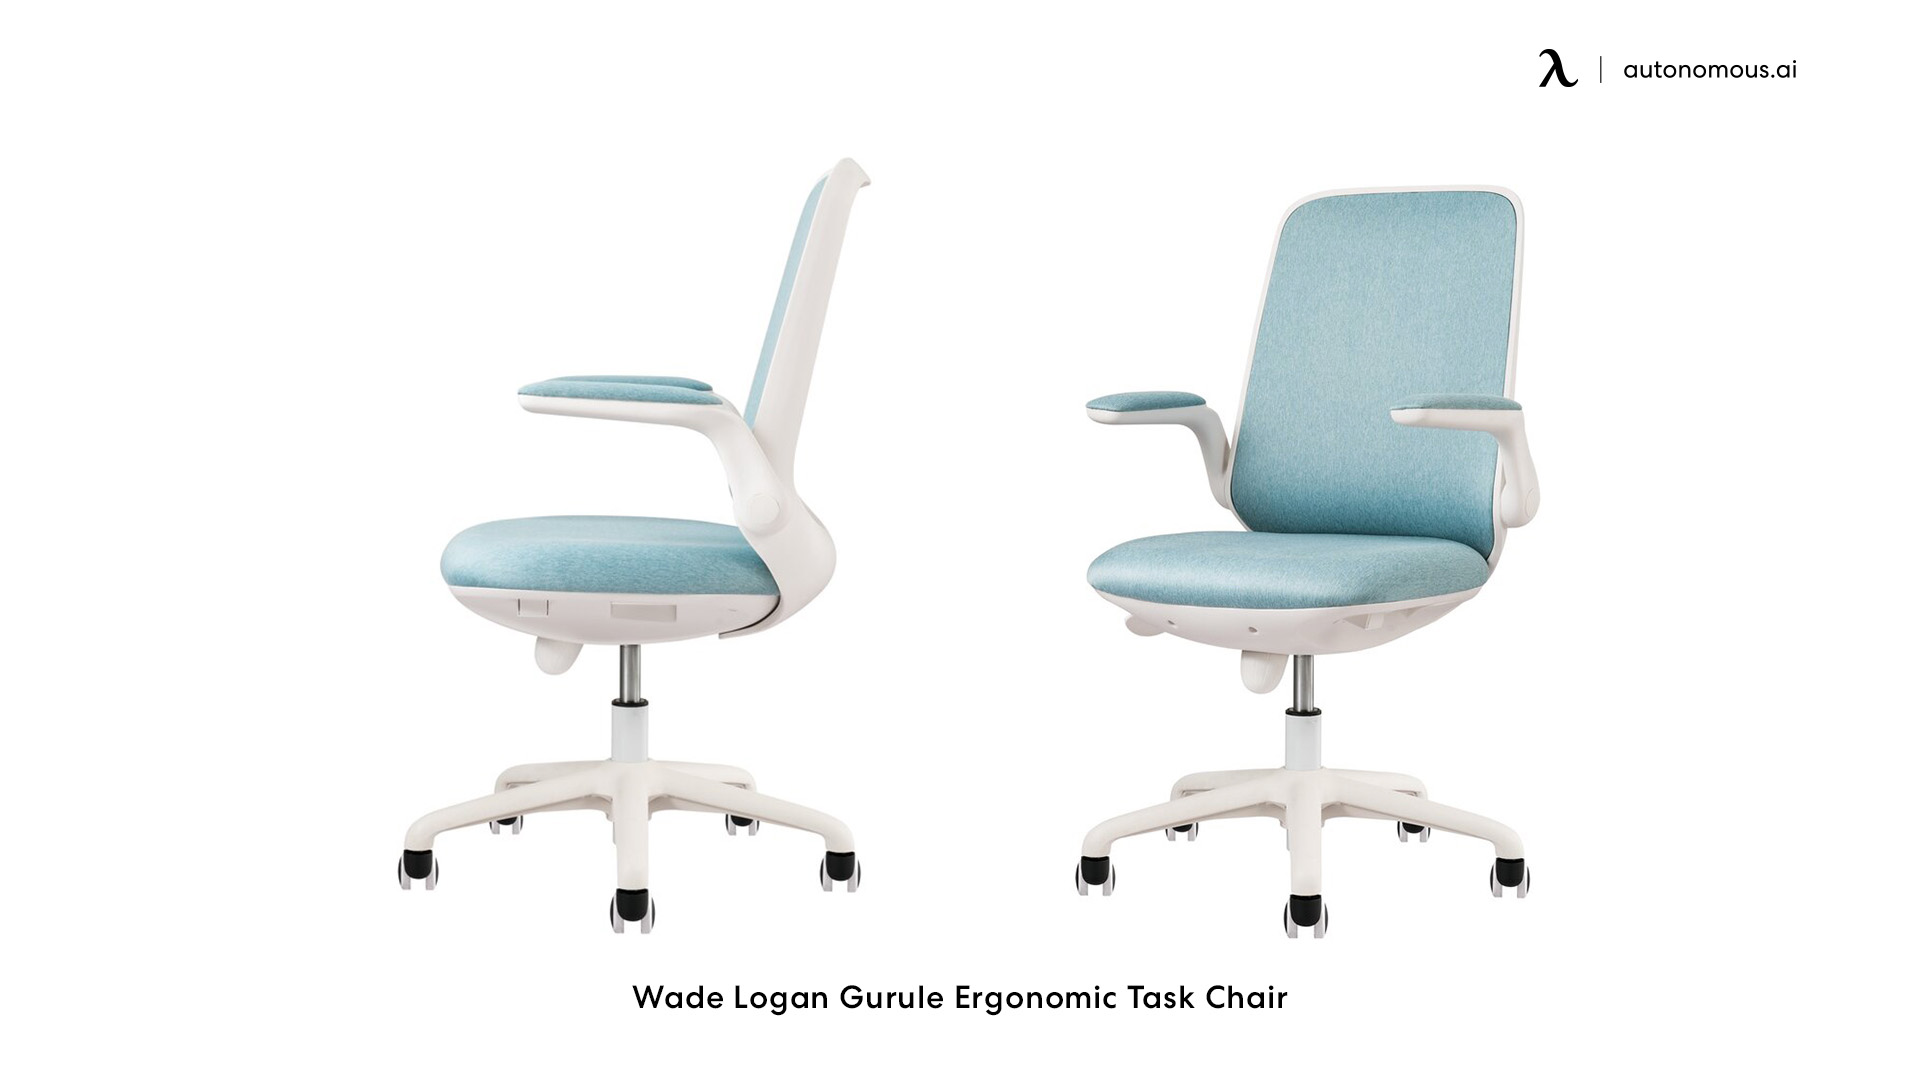 Gurule blue office chair by Wade Logan